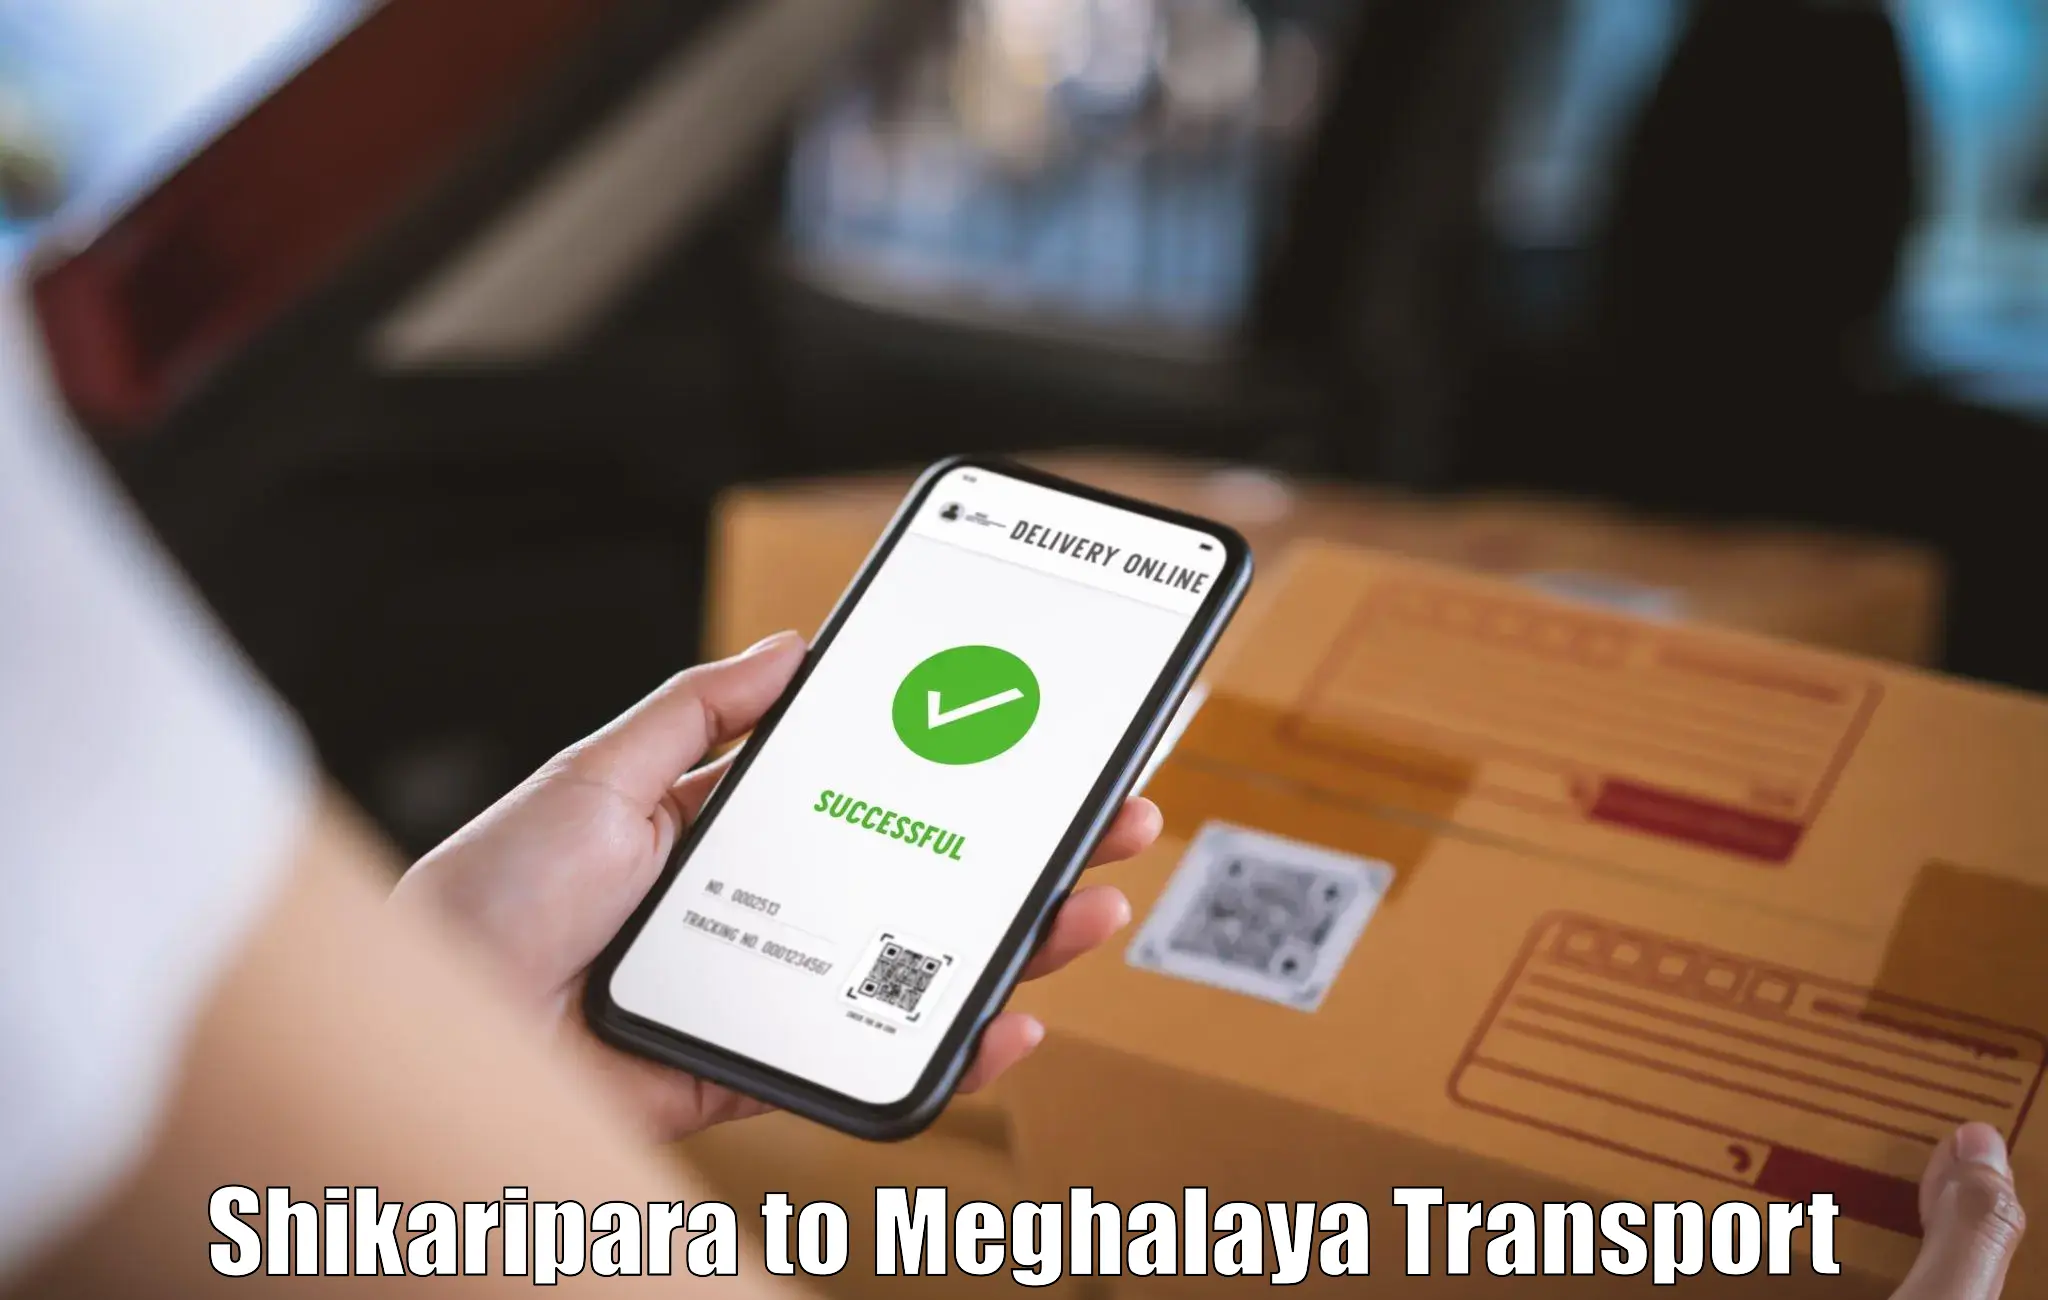 Air freight transport services Shikaripara to Meghalaya